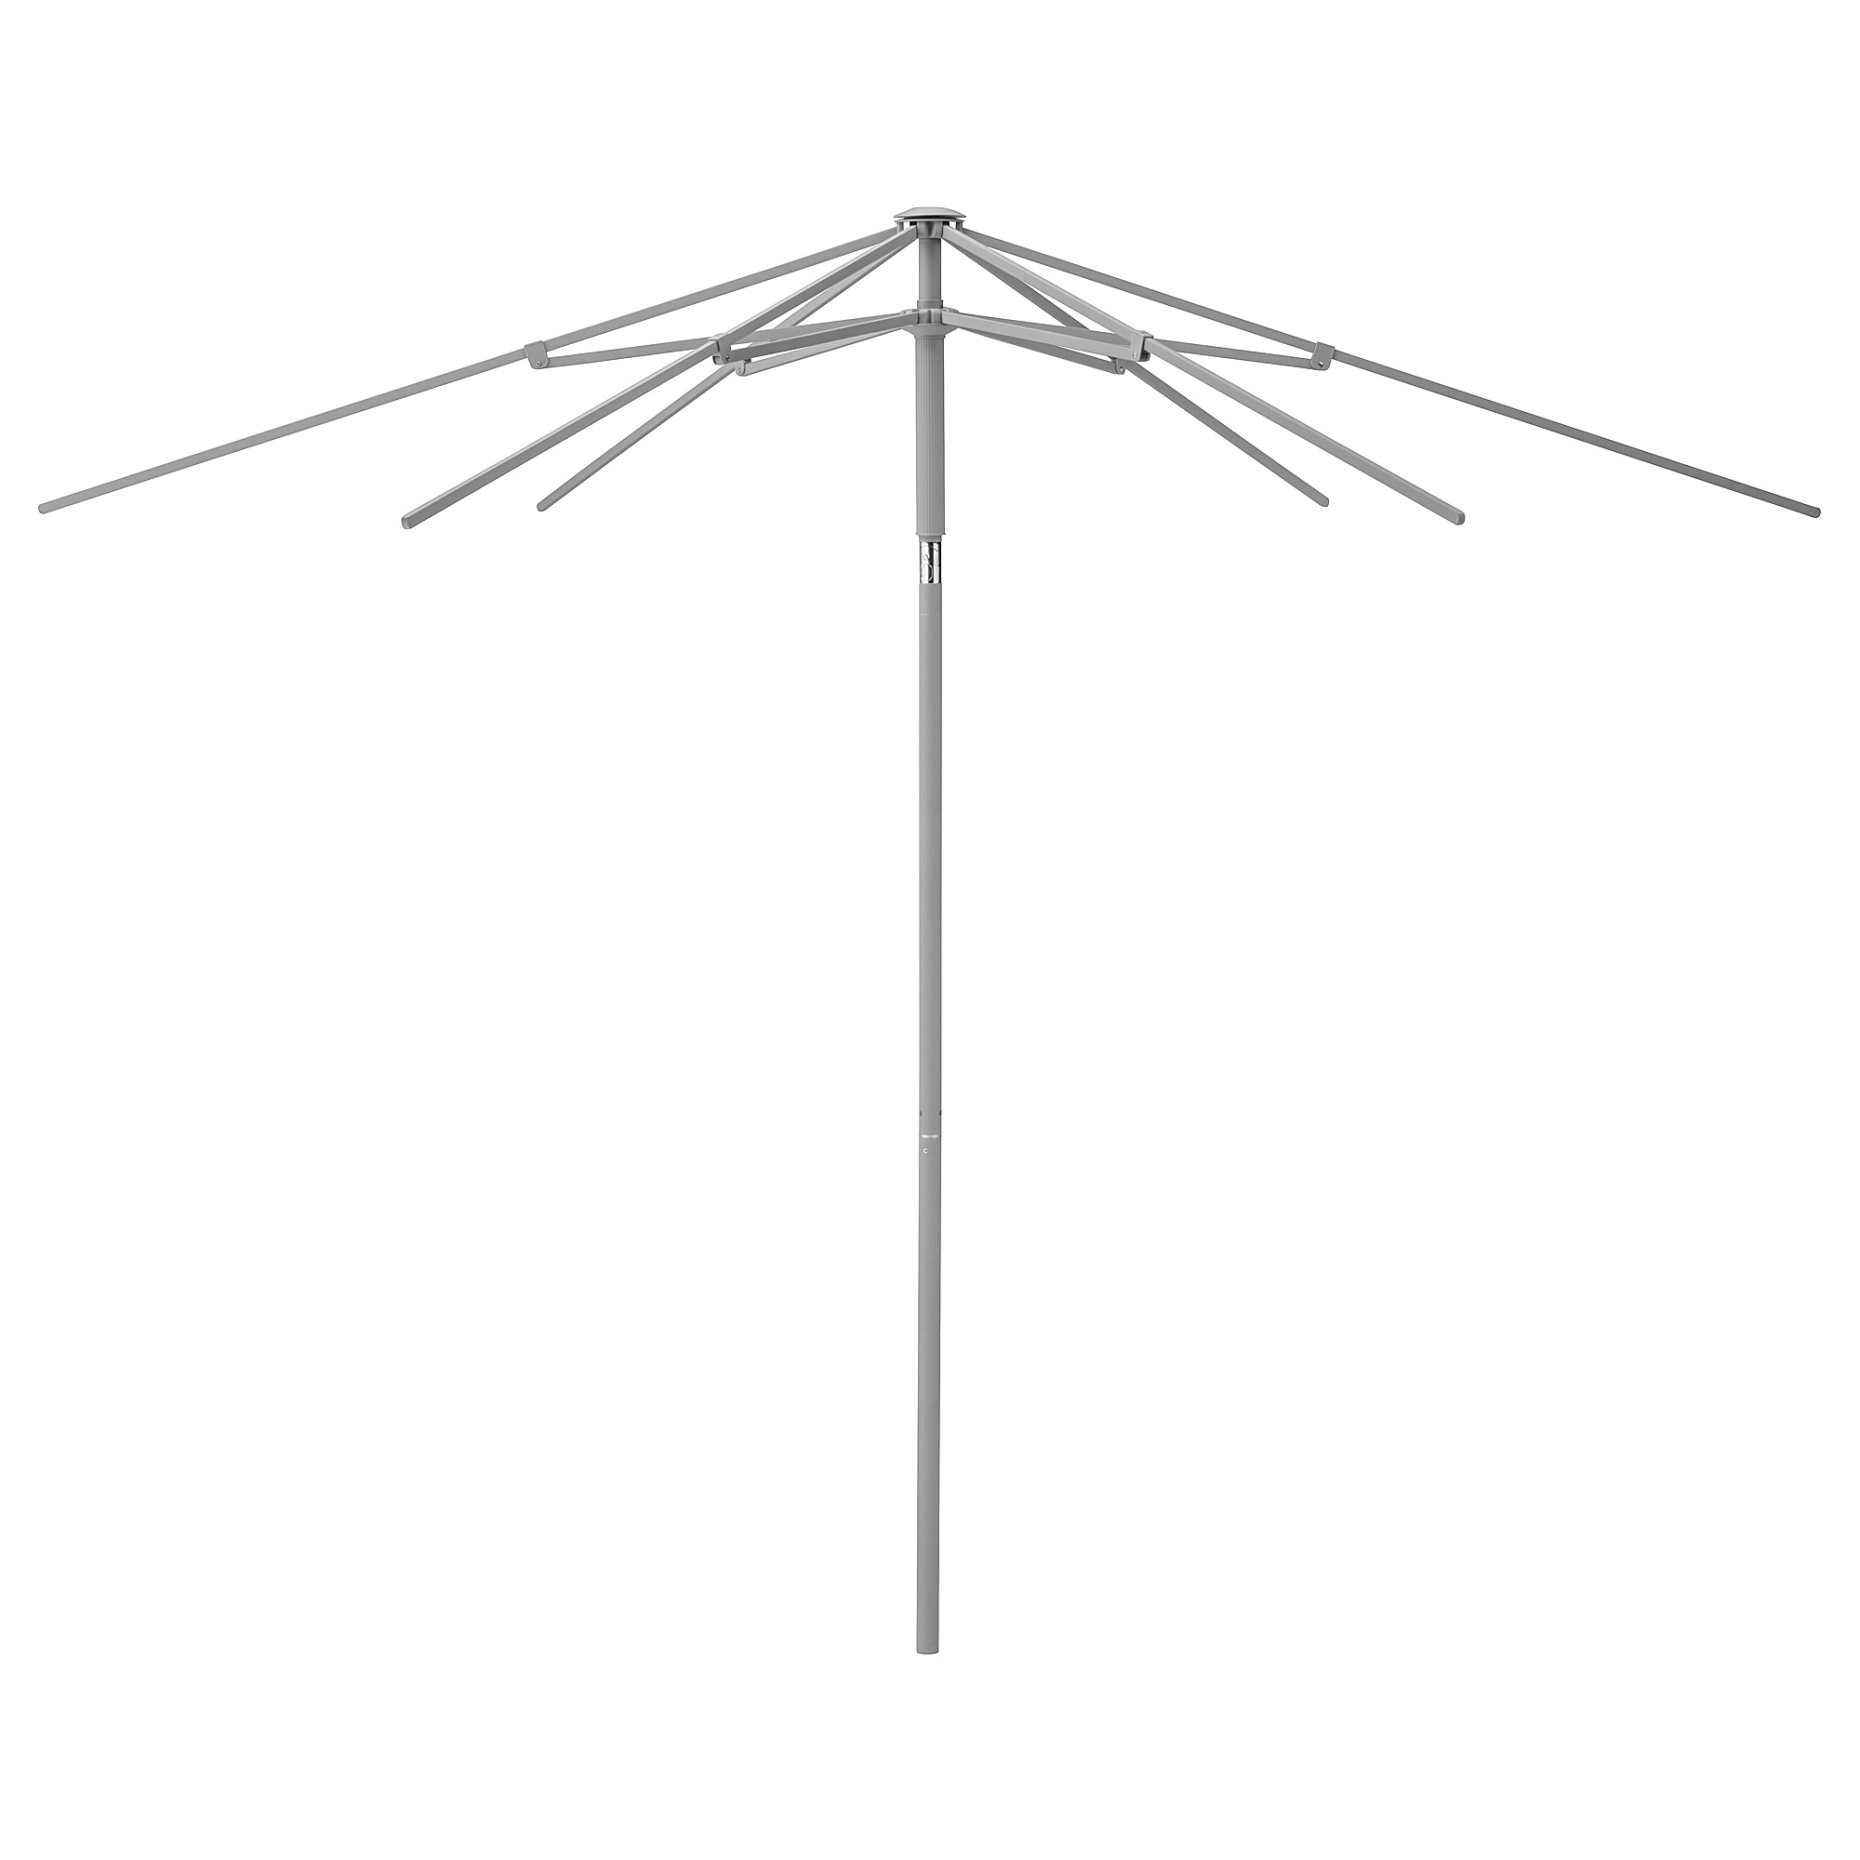 KUGGÖ, parasol frame, 503.960.94